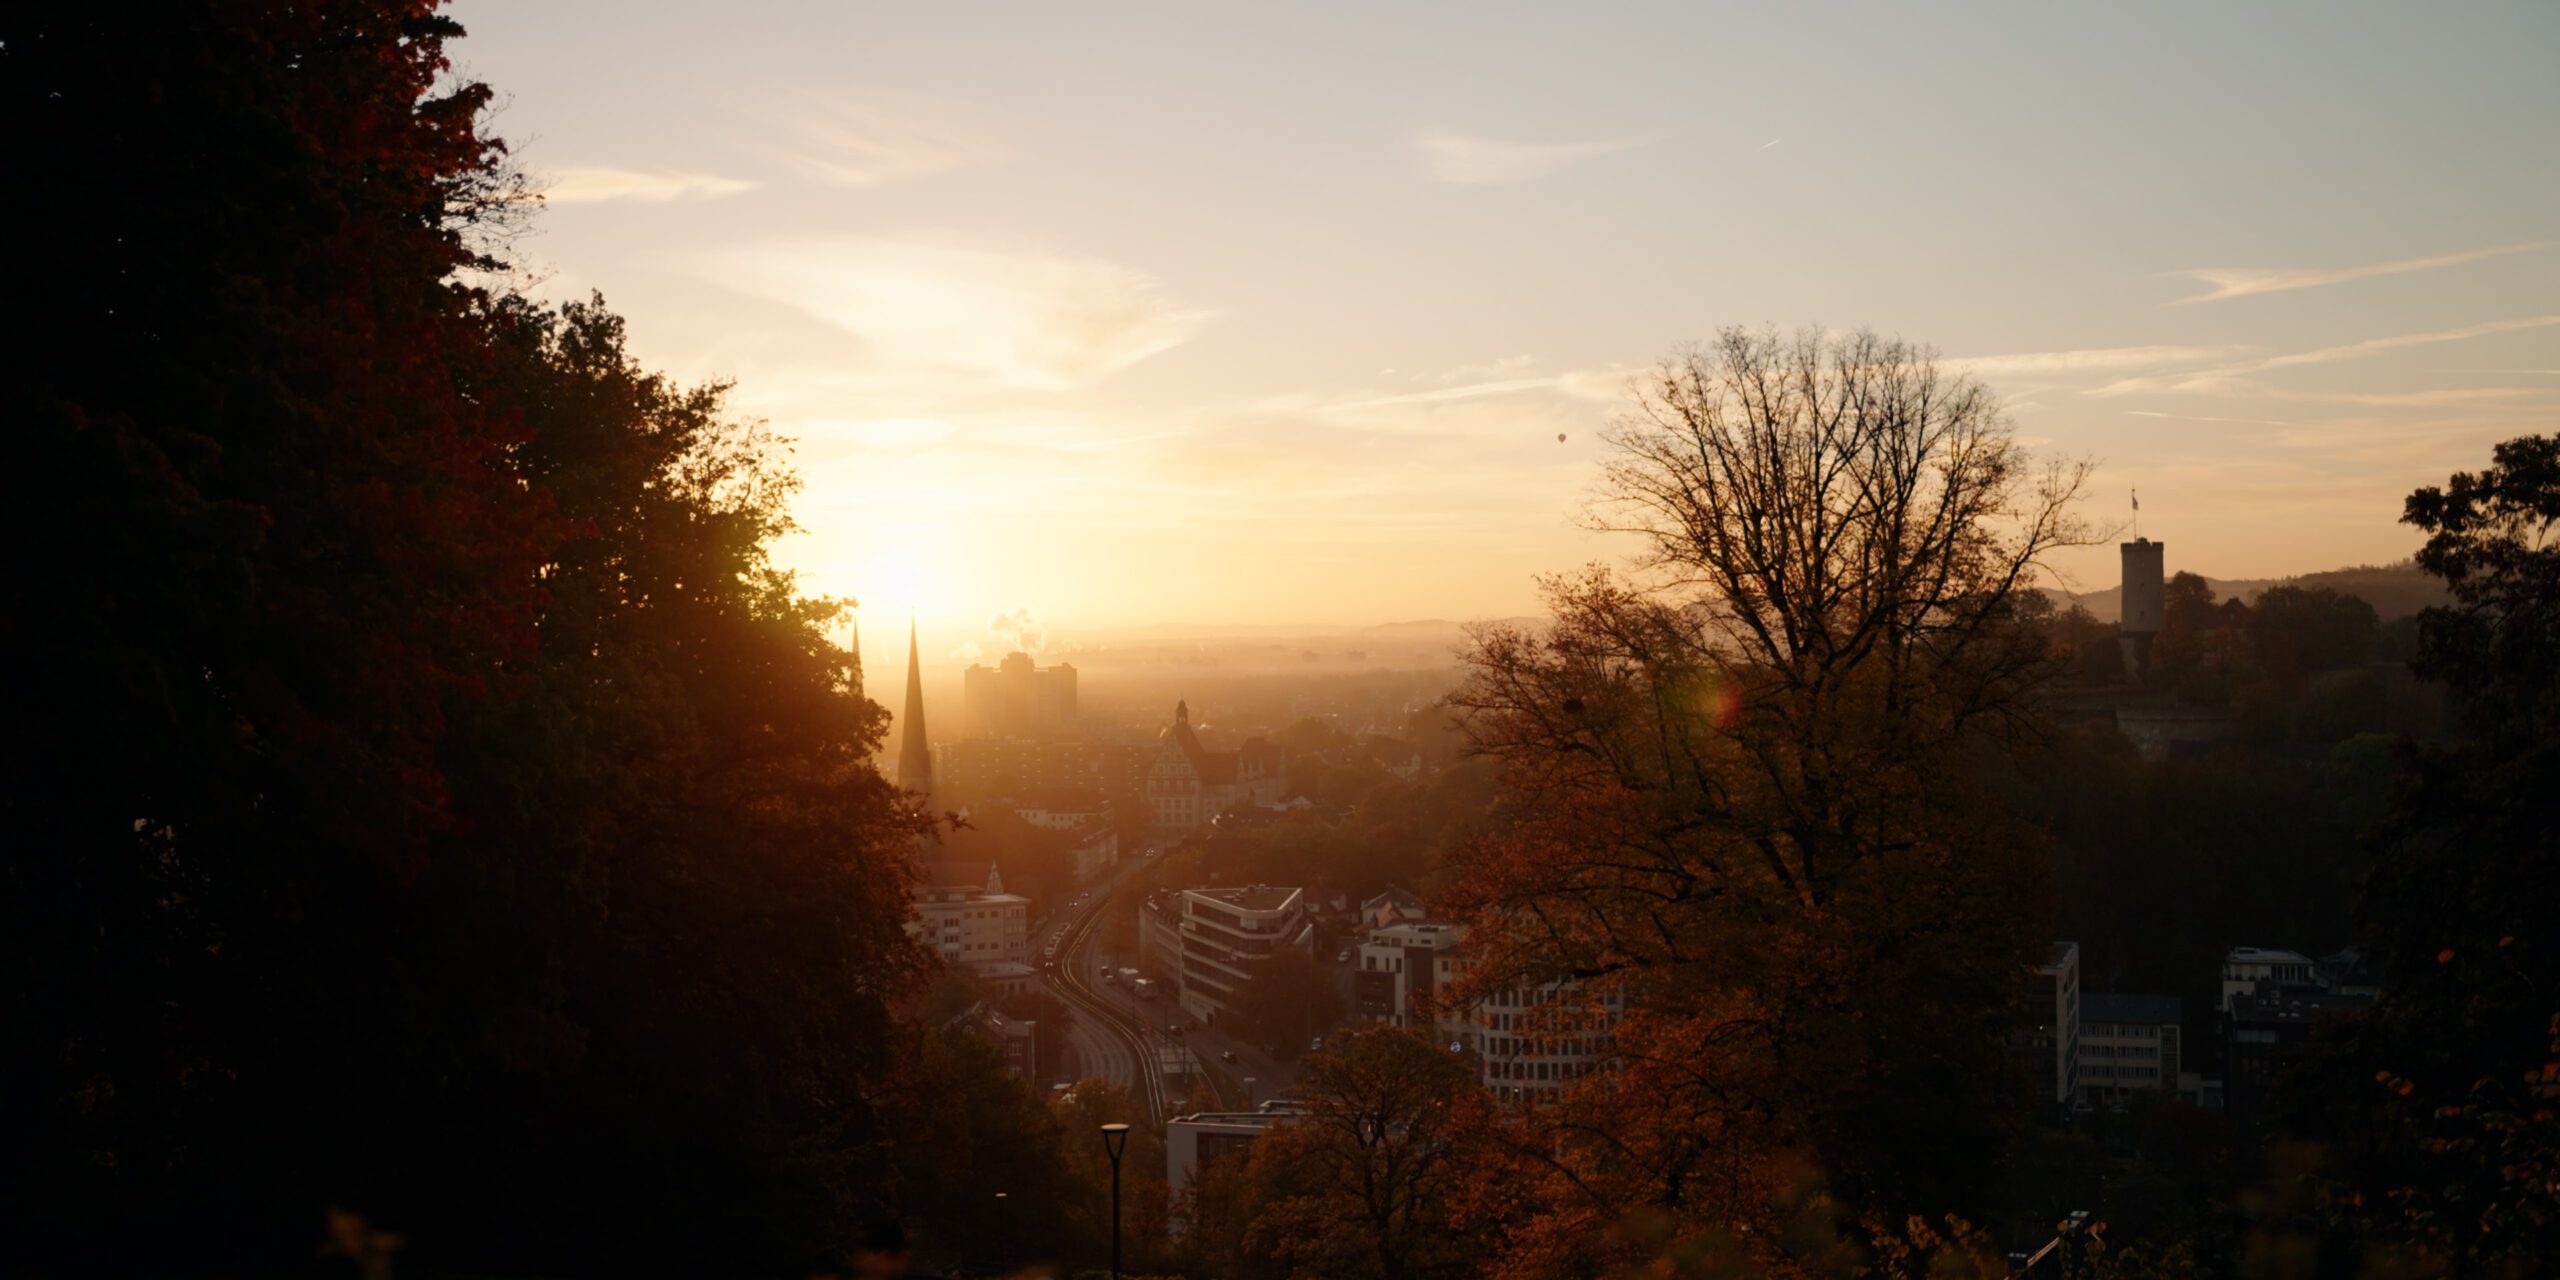 Die schönsten Orte in Bielefeld, die schönsten Fotospots in Bielefeld, Sonnenaufgang Johannesberg Bielefeld, goldene Stunde Bielefeld